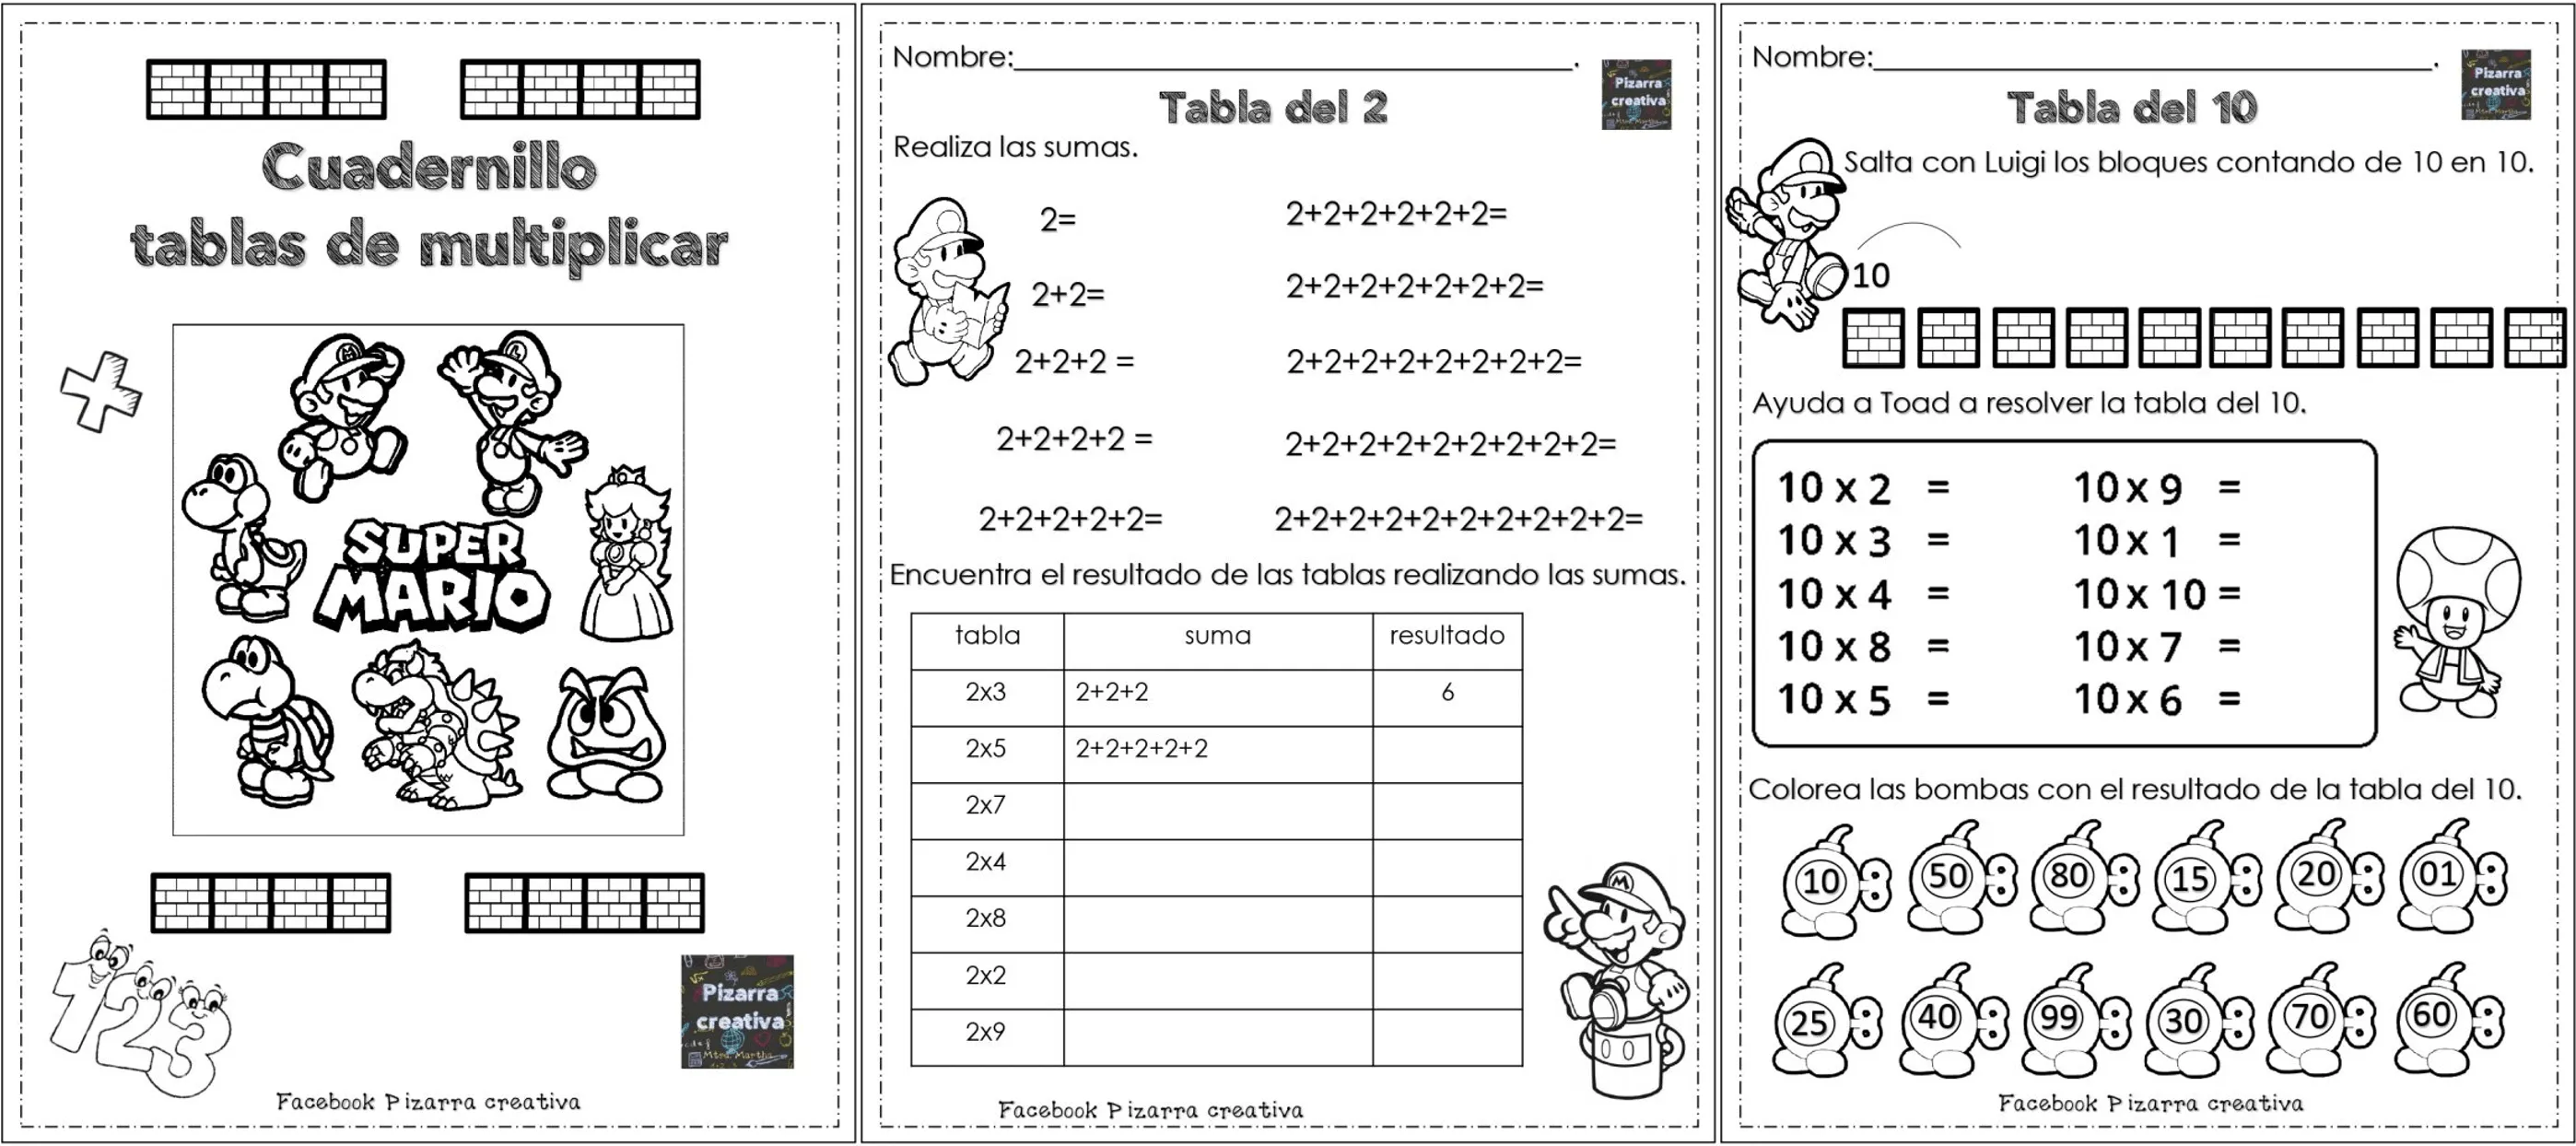 Aprende las tablas de multiplicar con Super Mario tu mejor amigo